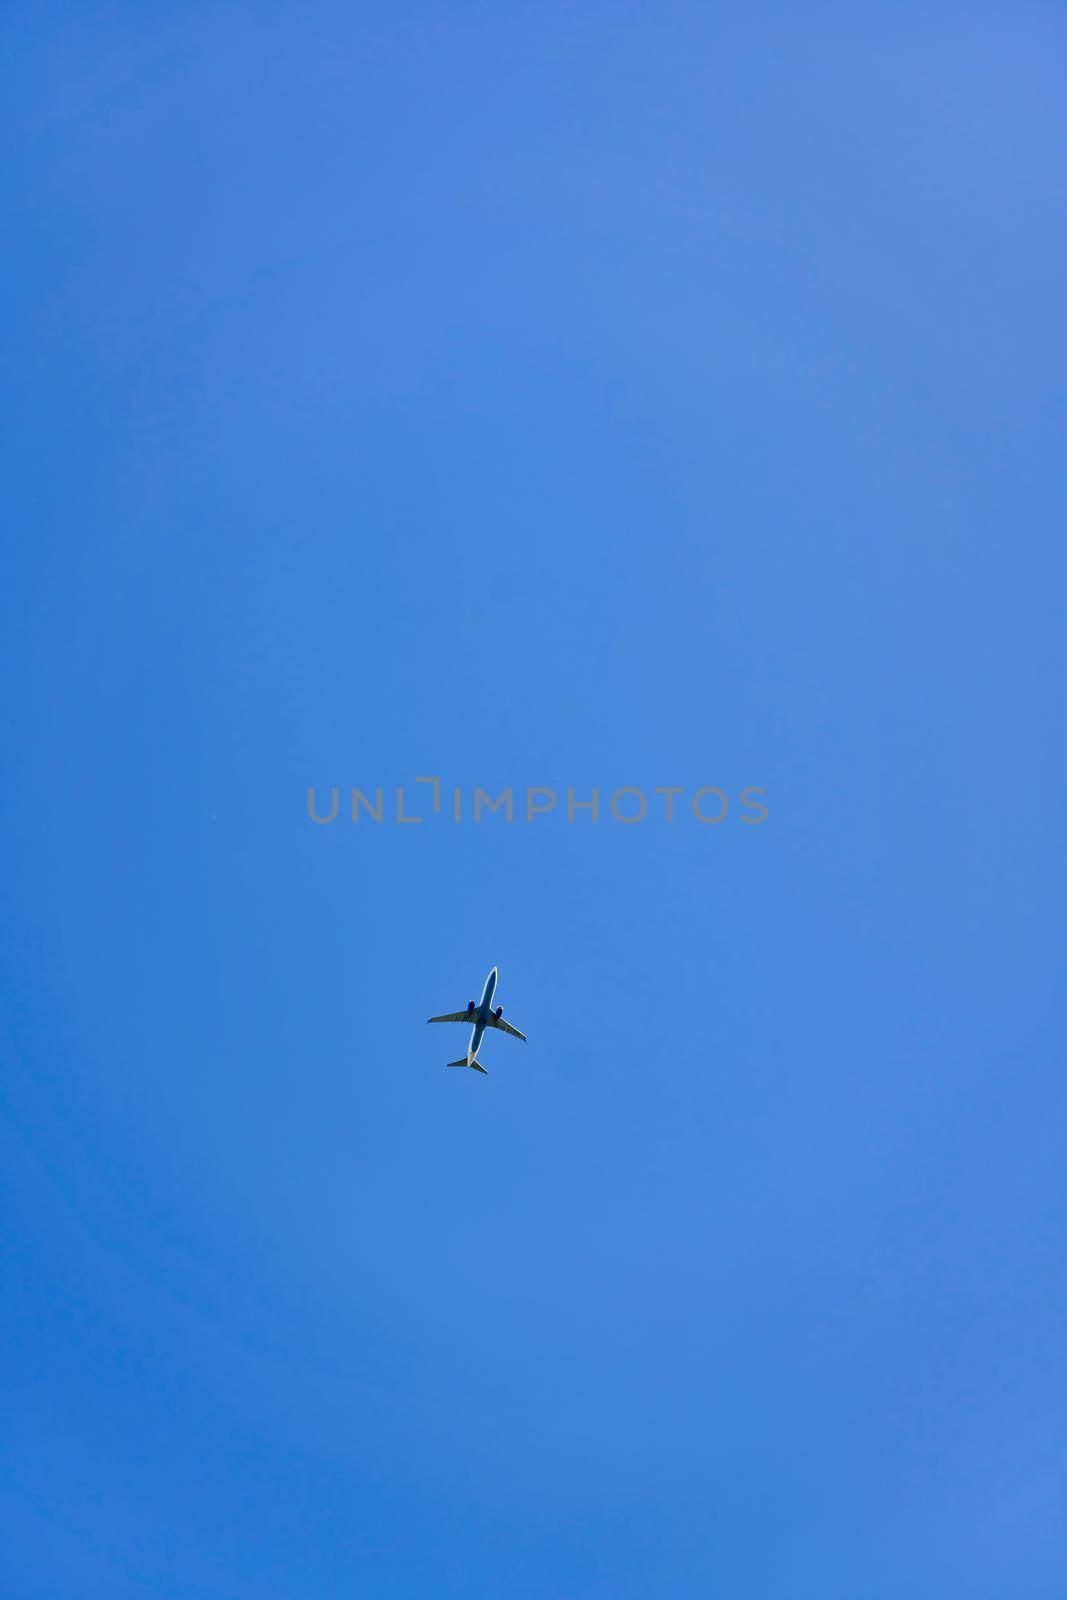 High flying passenger plane against the blue sky by vizland